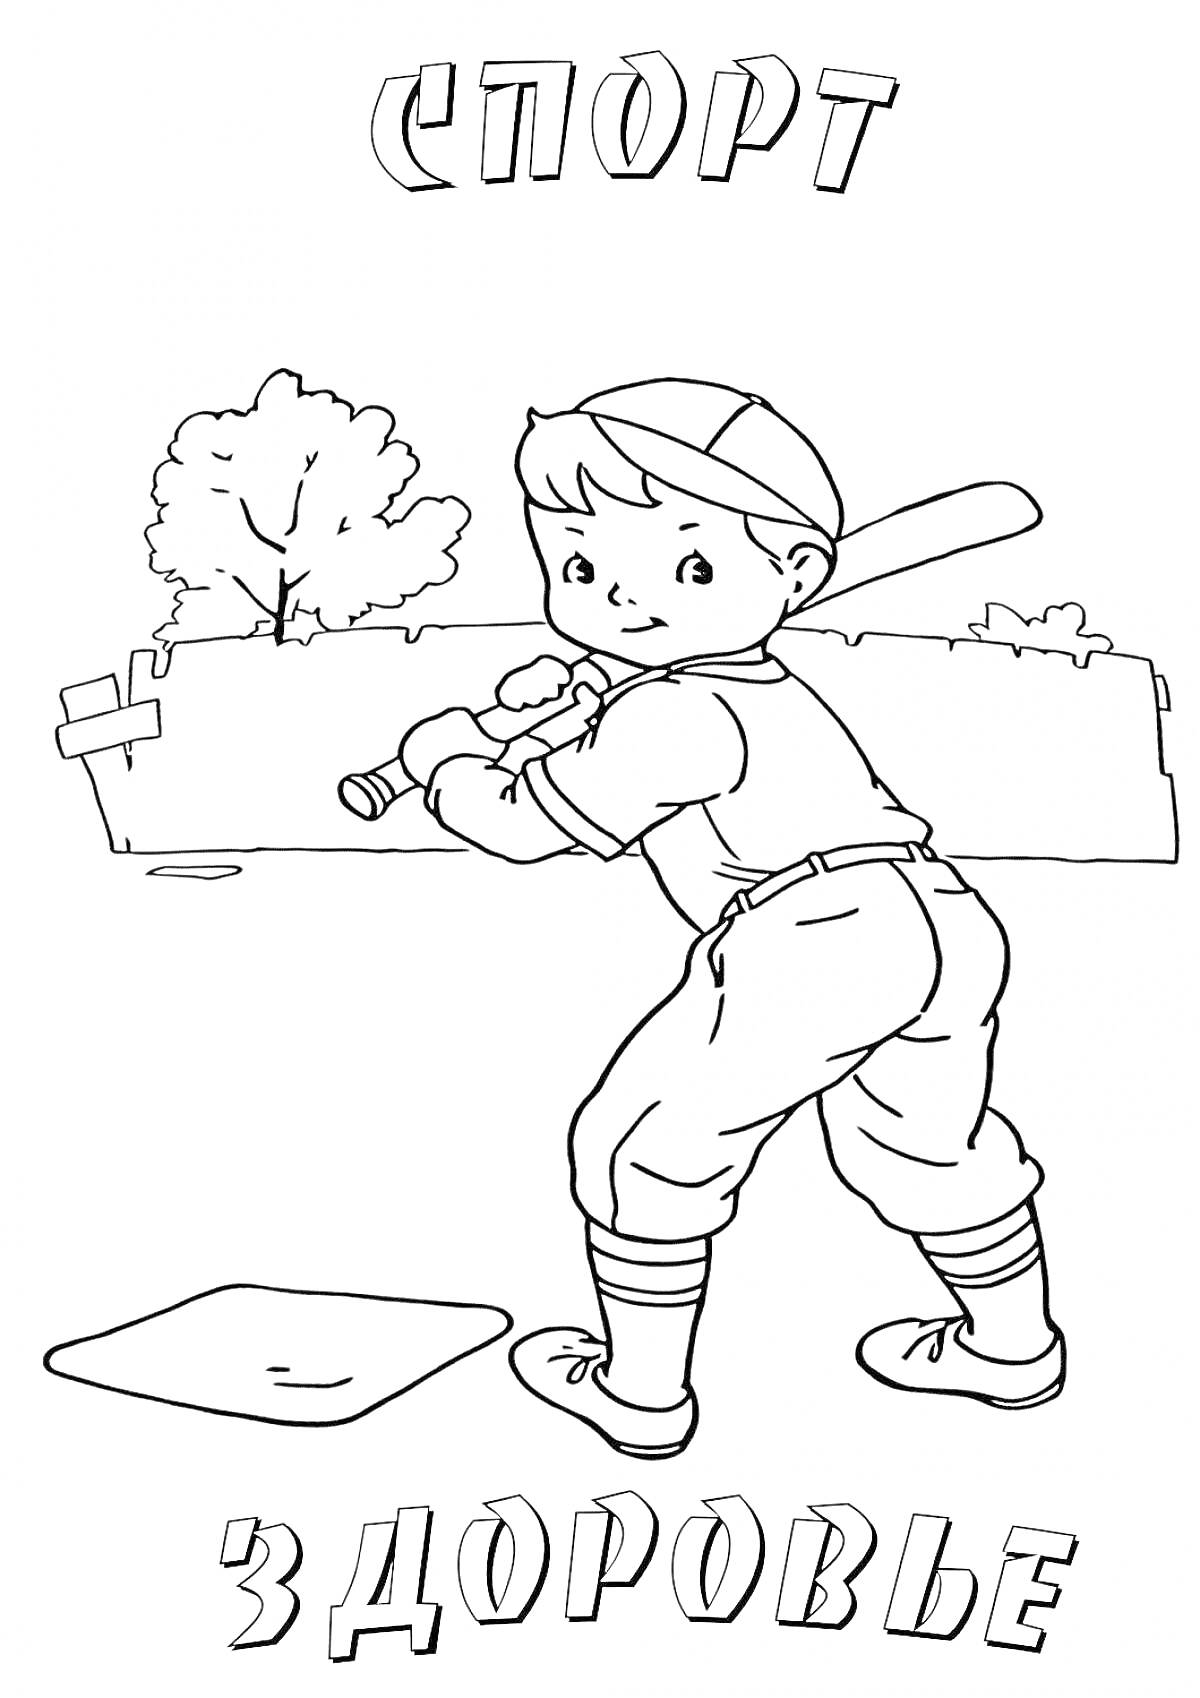 Мальчик с битой на поле для игры в бейсбол